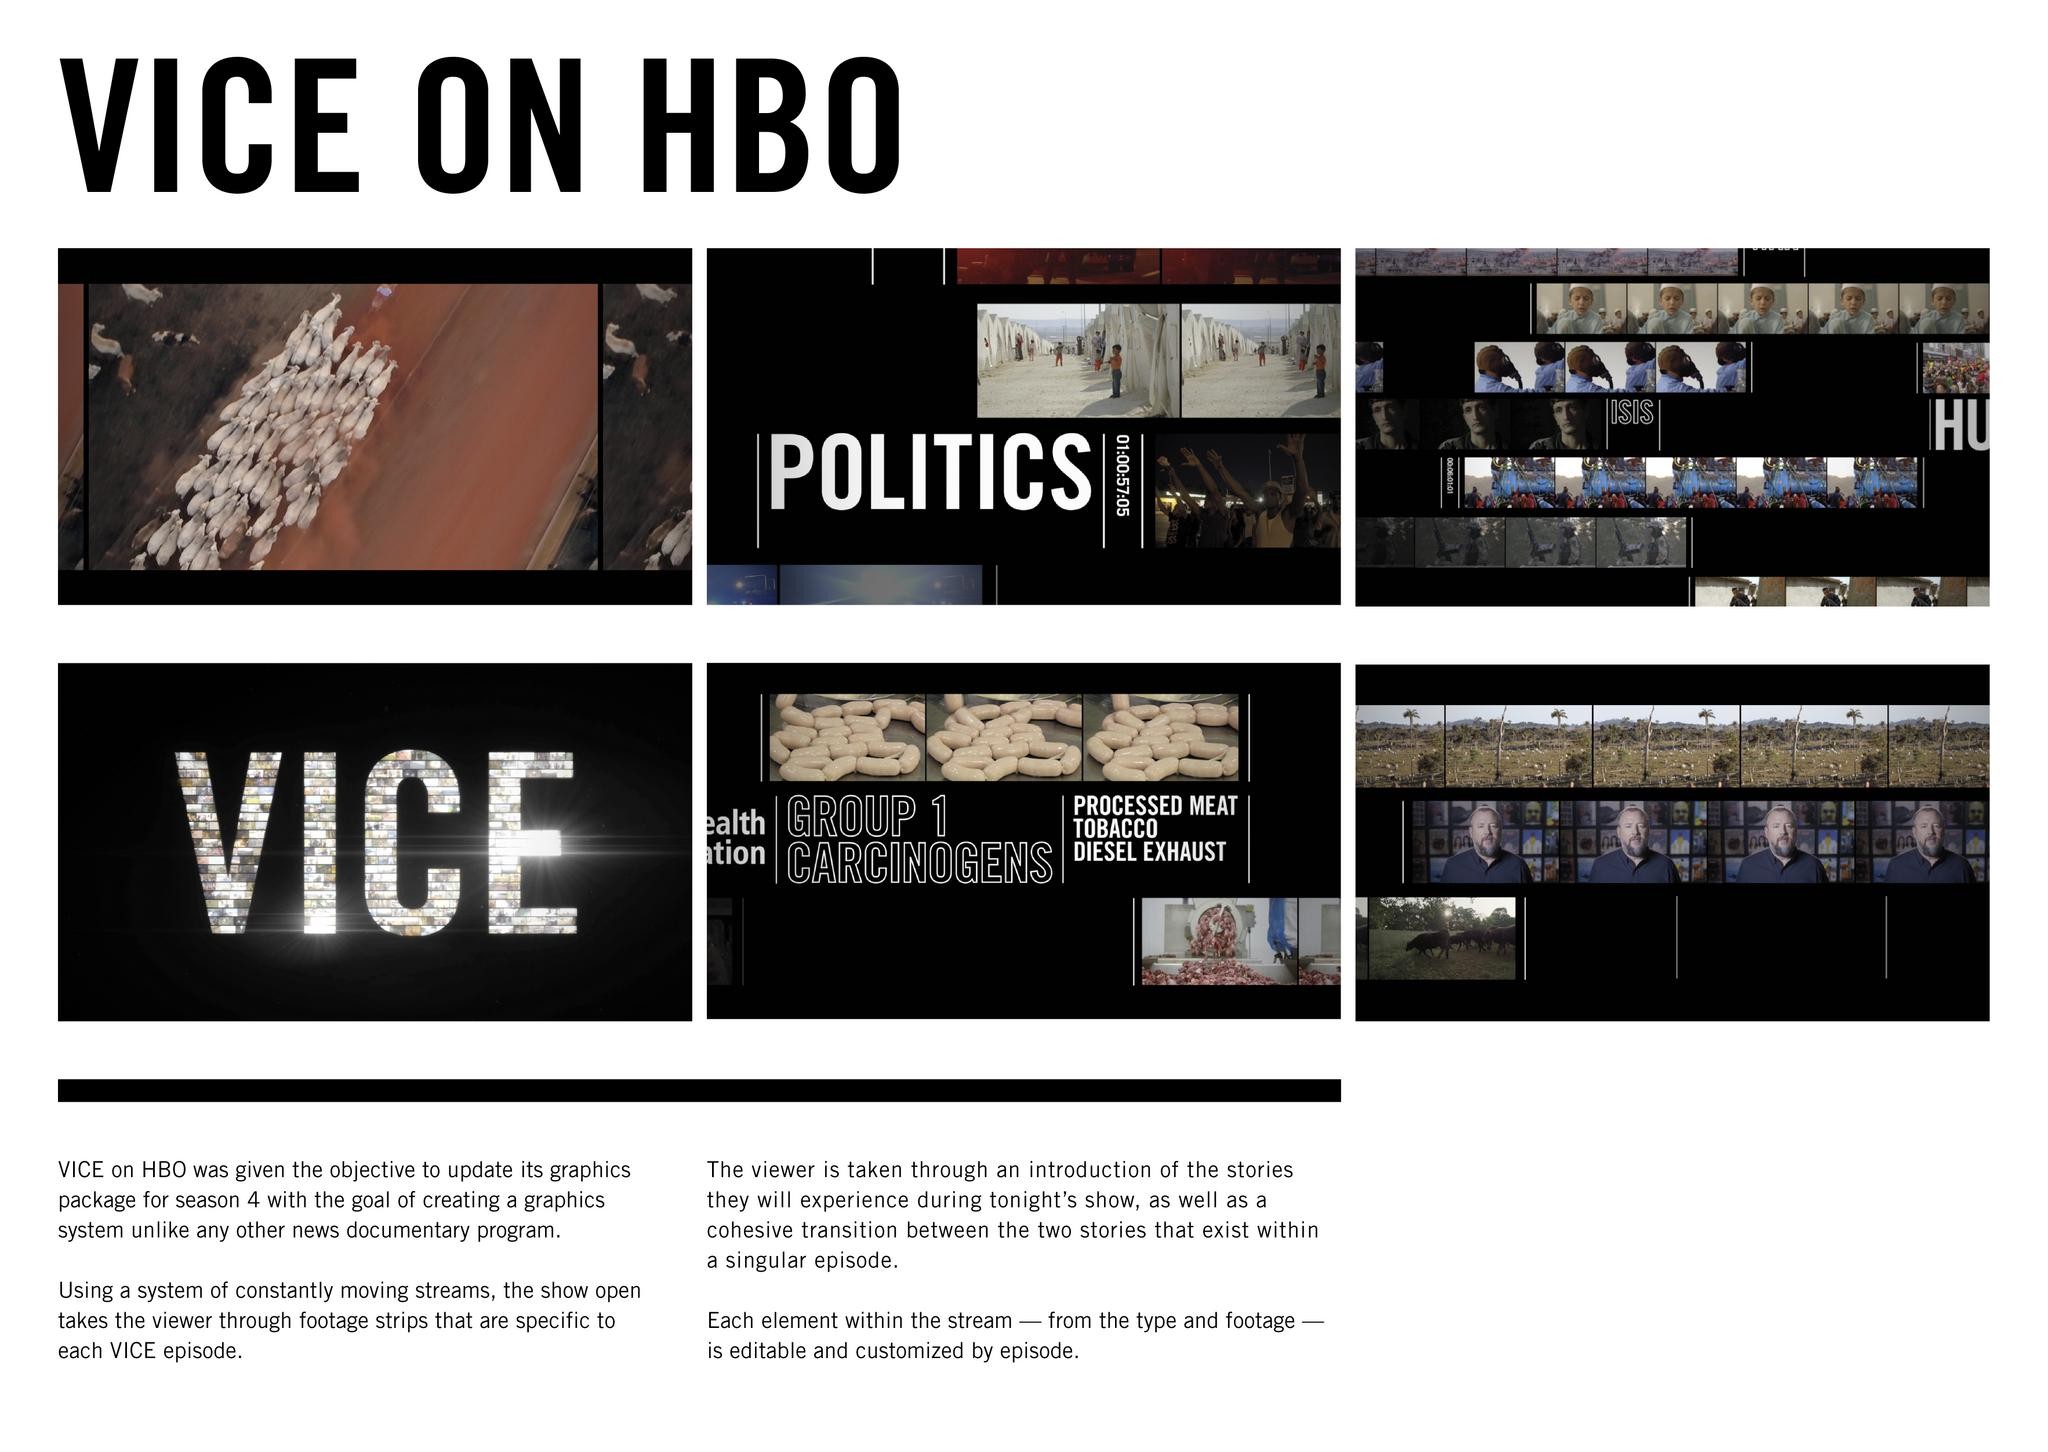 VICE on HBO Season 4